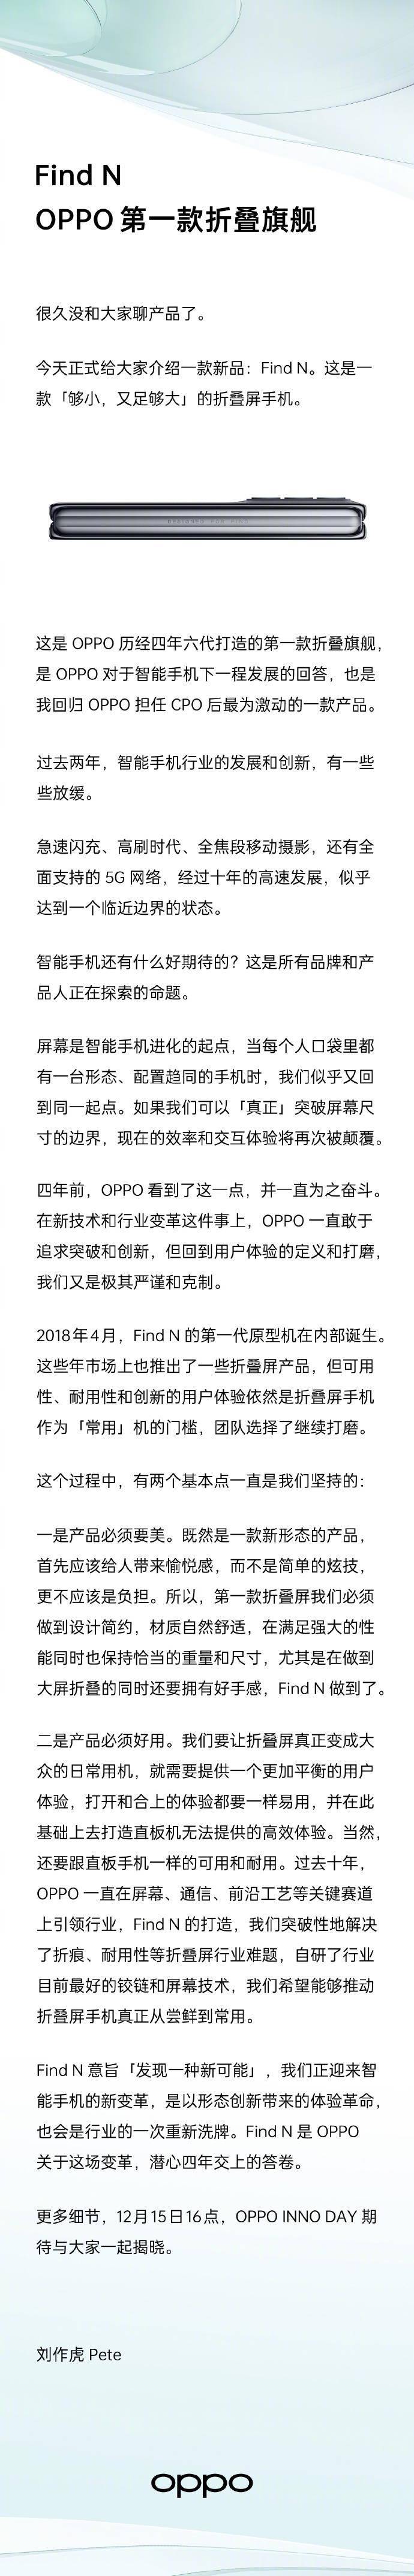 刘作虎|OPPO Find N 官宣：旗下第一台折叠屏旗舰，12 月 15 日见